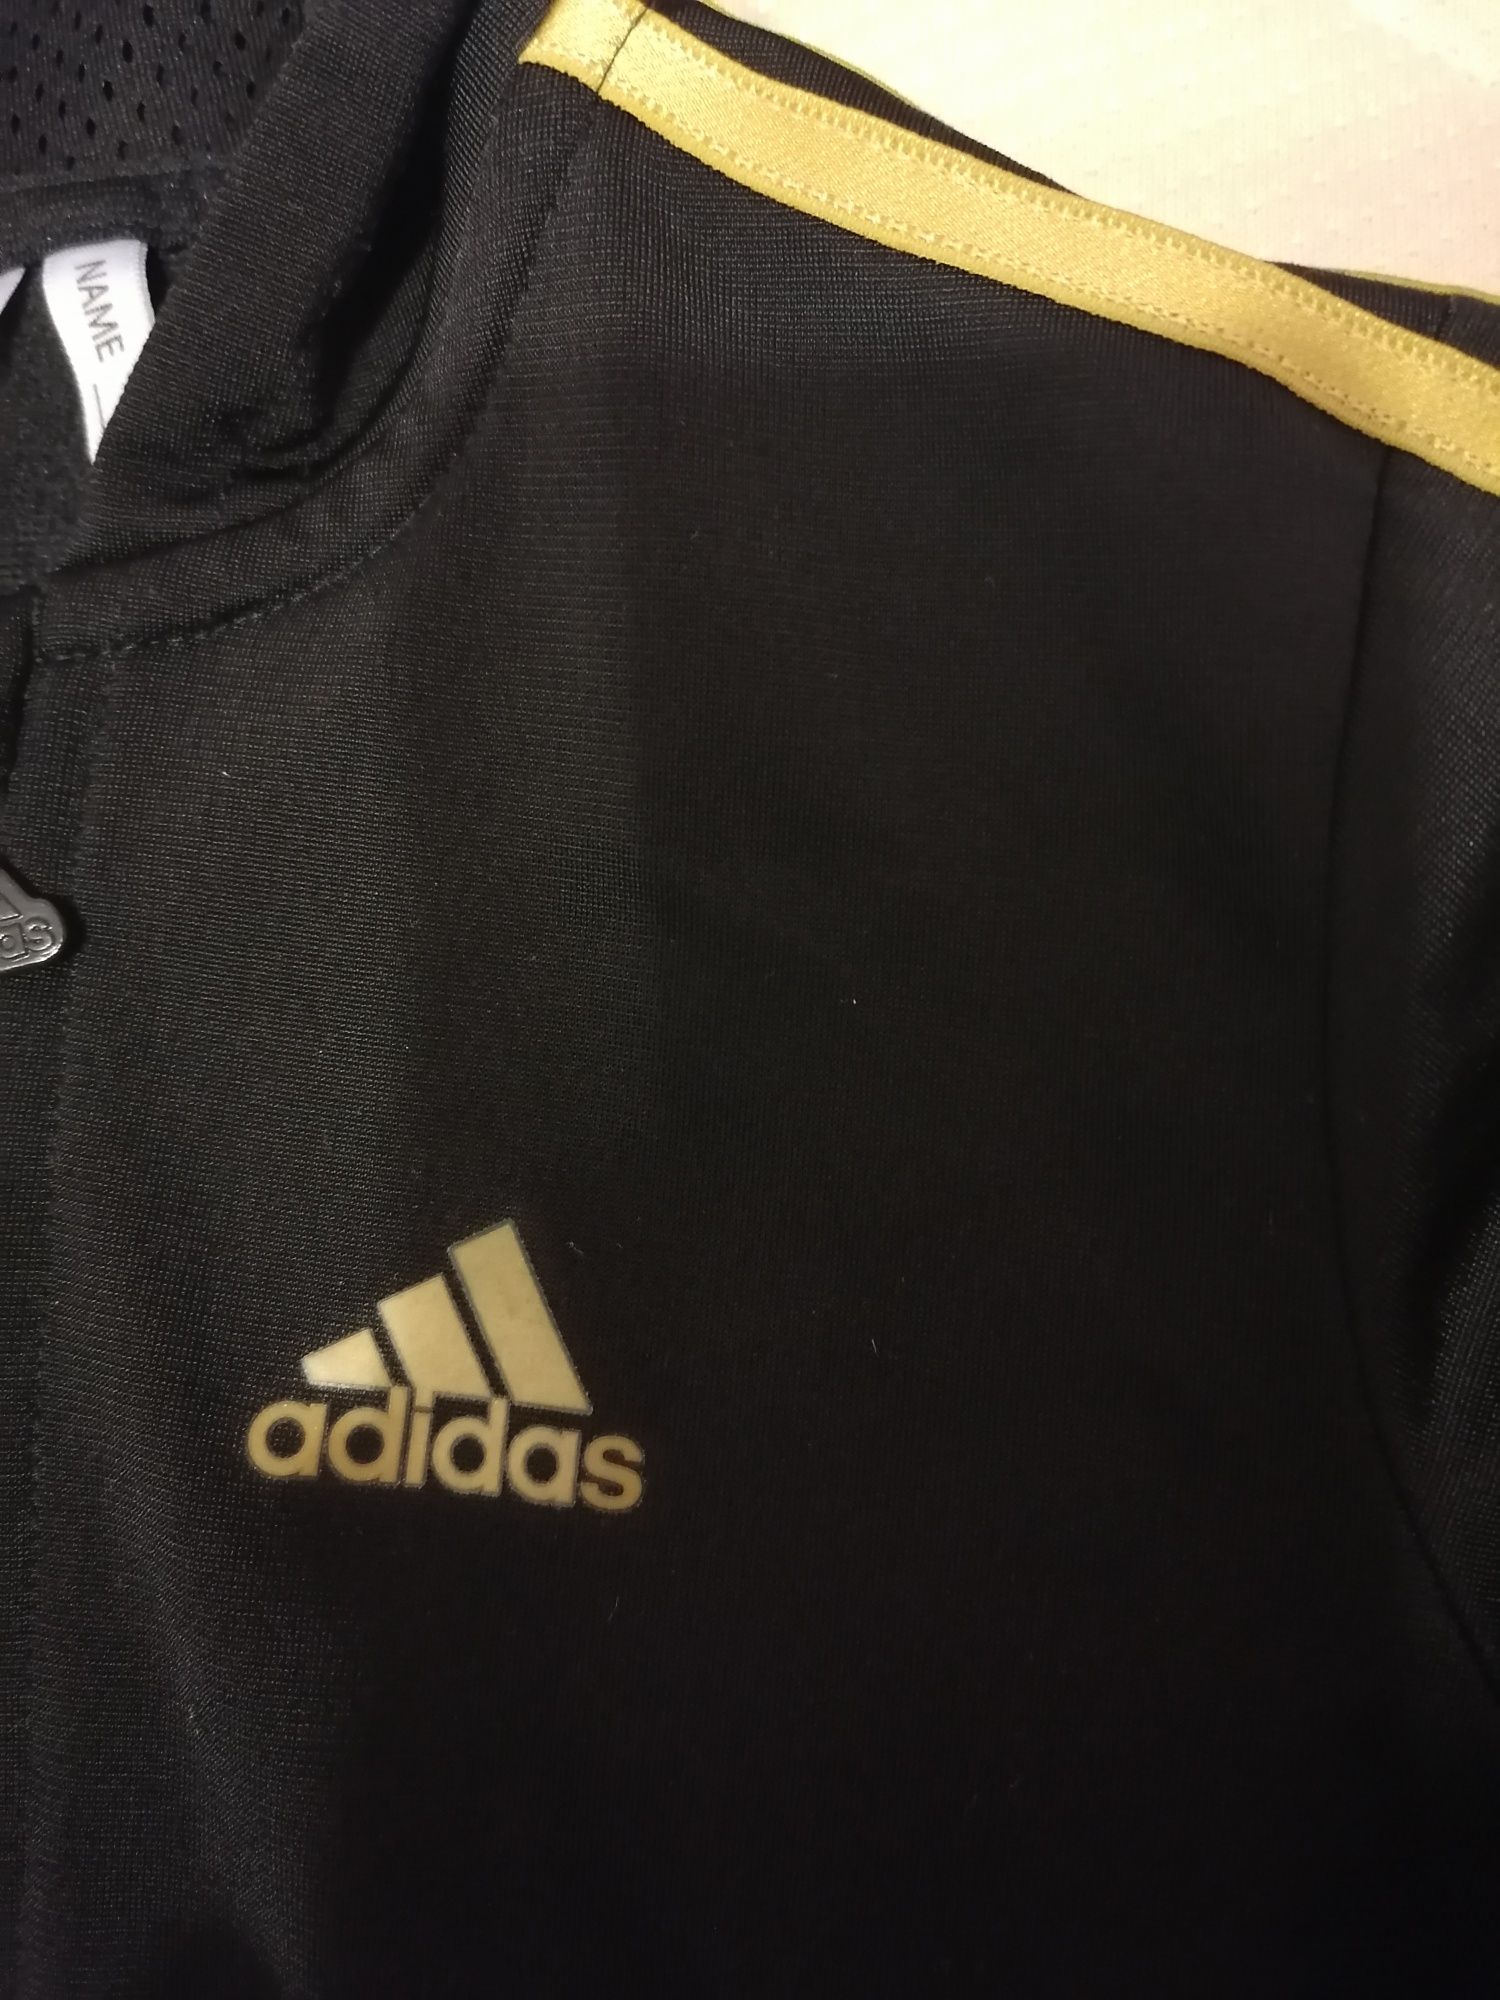 Geaca sport fetite Adidas, negru cu auriu, 3-4 ani